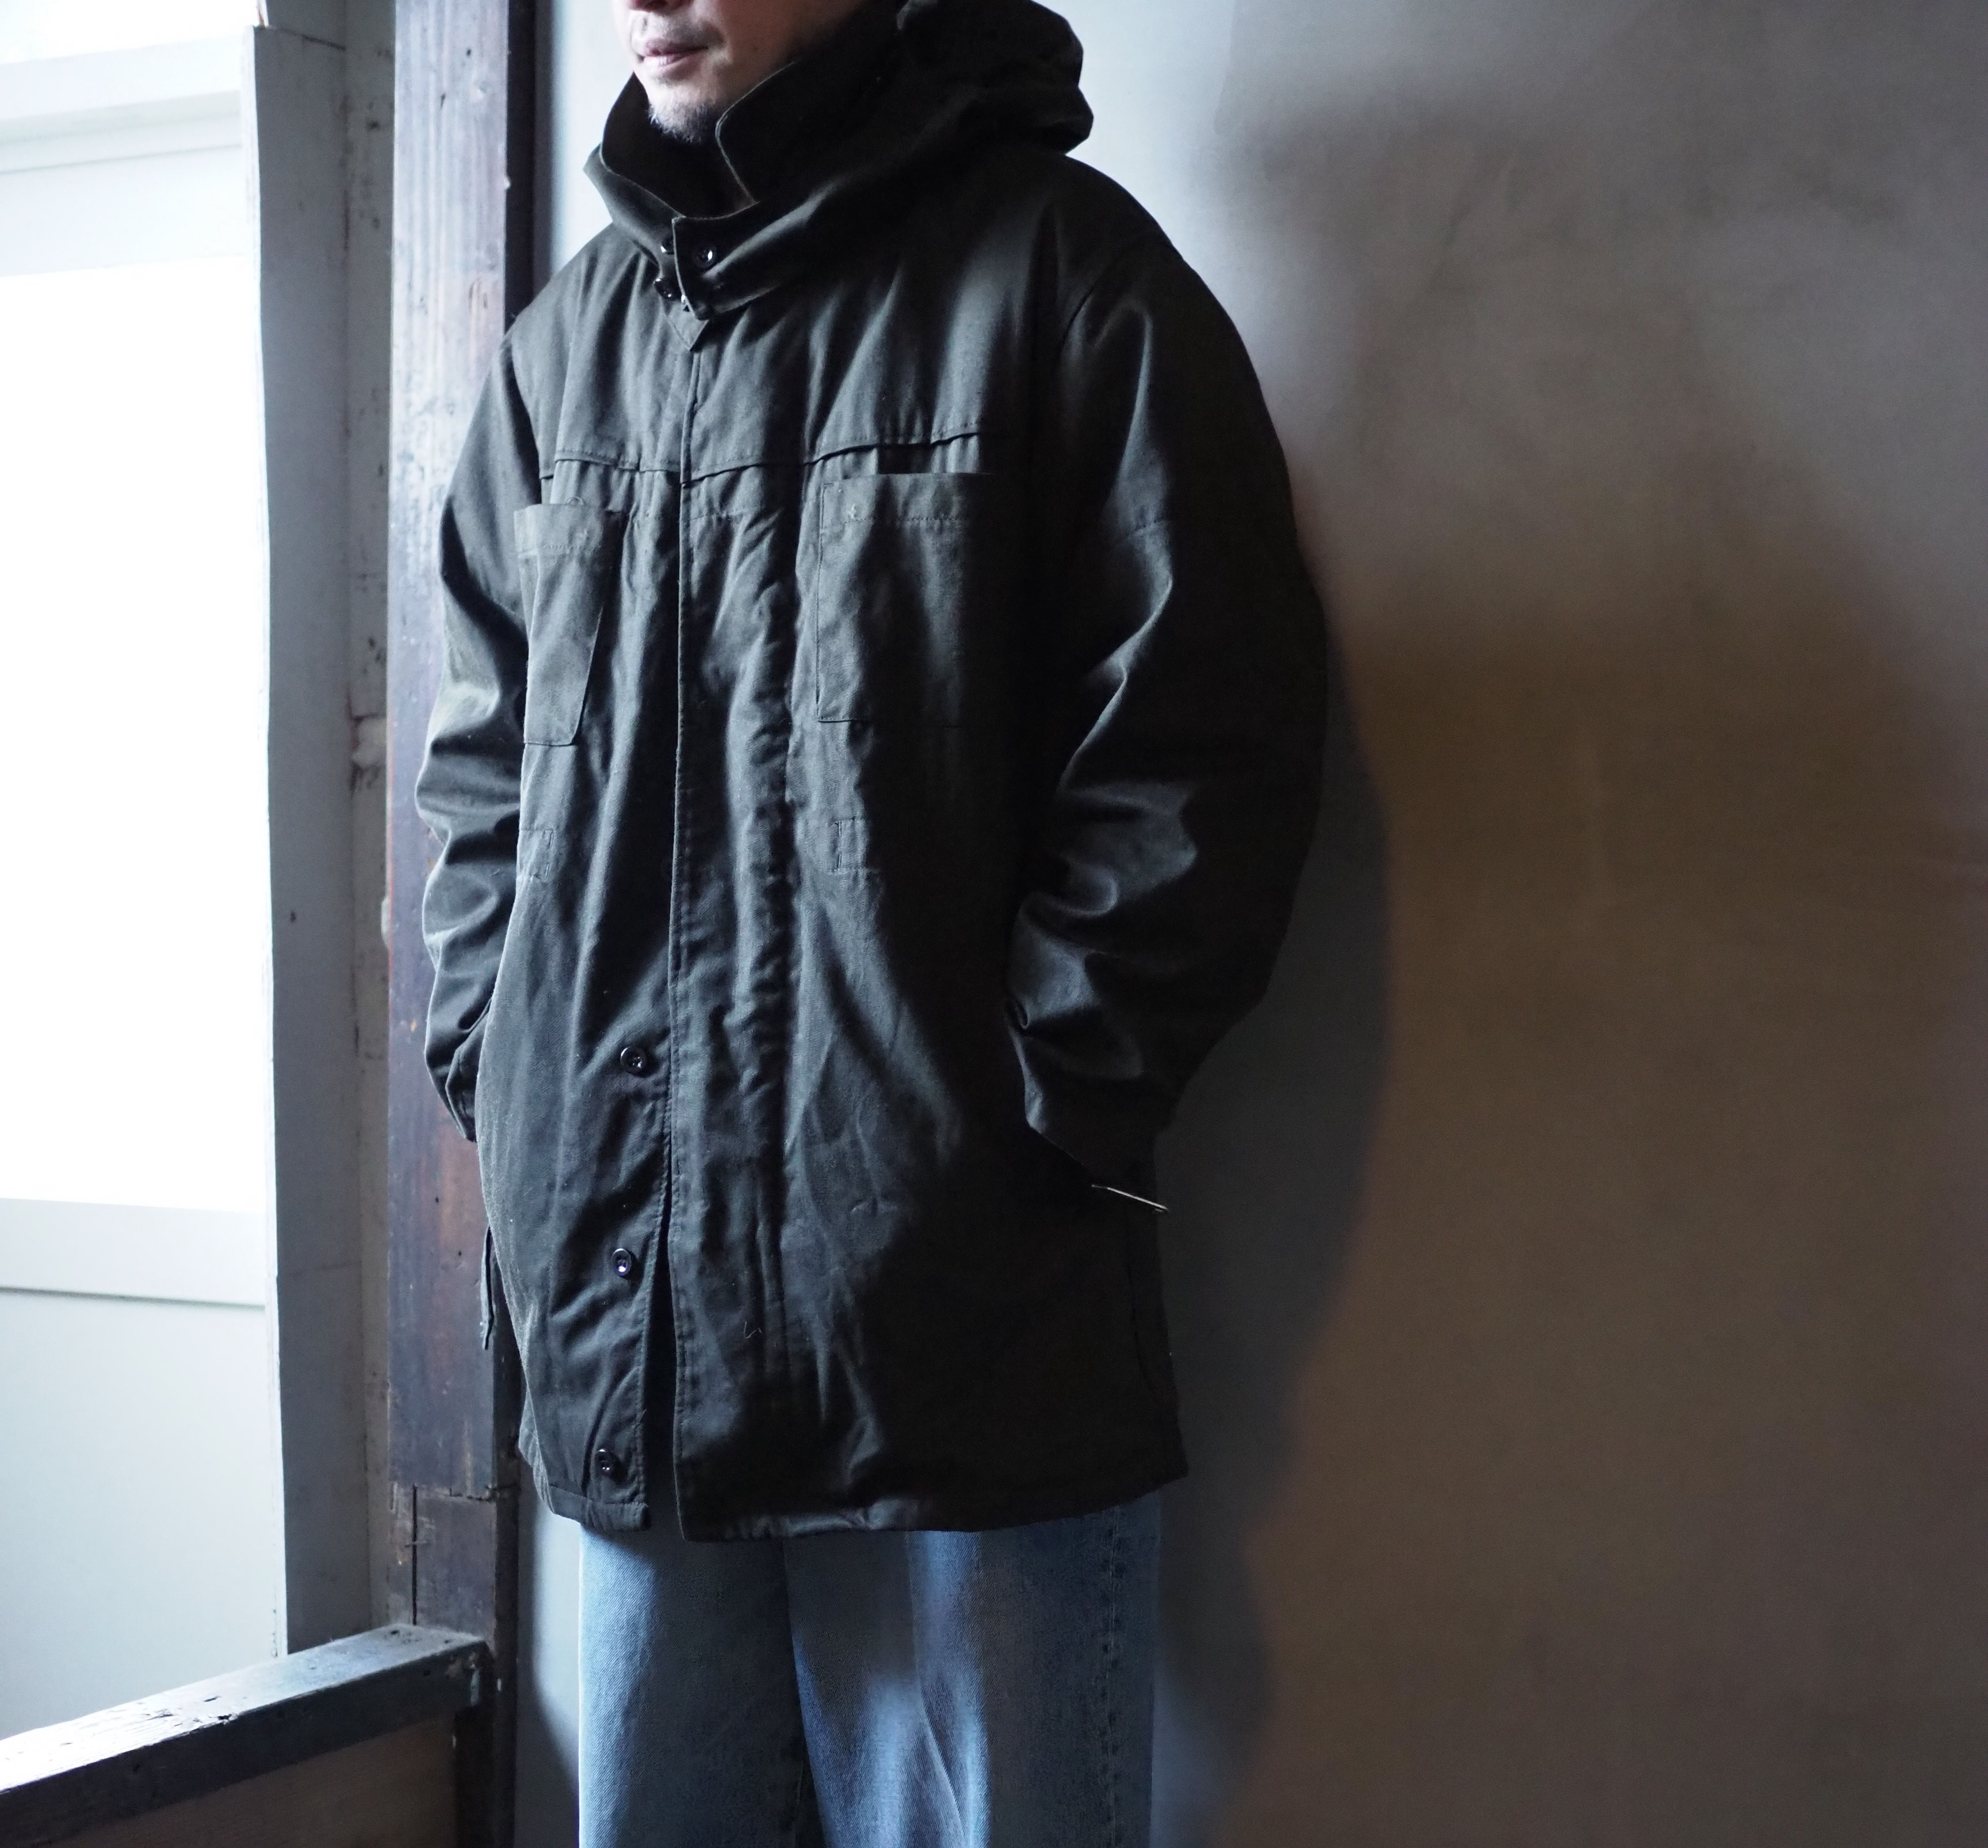 omitsuの「古着のおつくろい」40代男性・古着の着こなし。製品染めコート編。